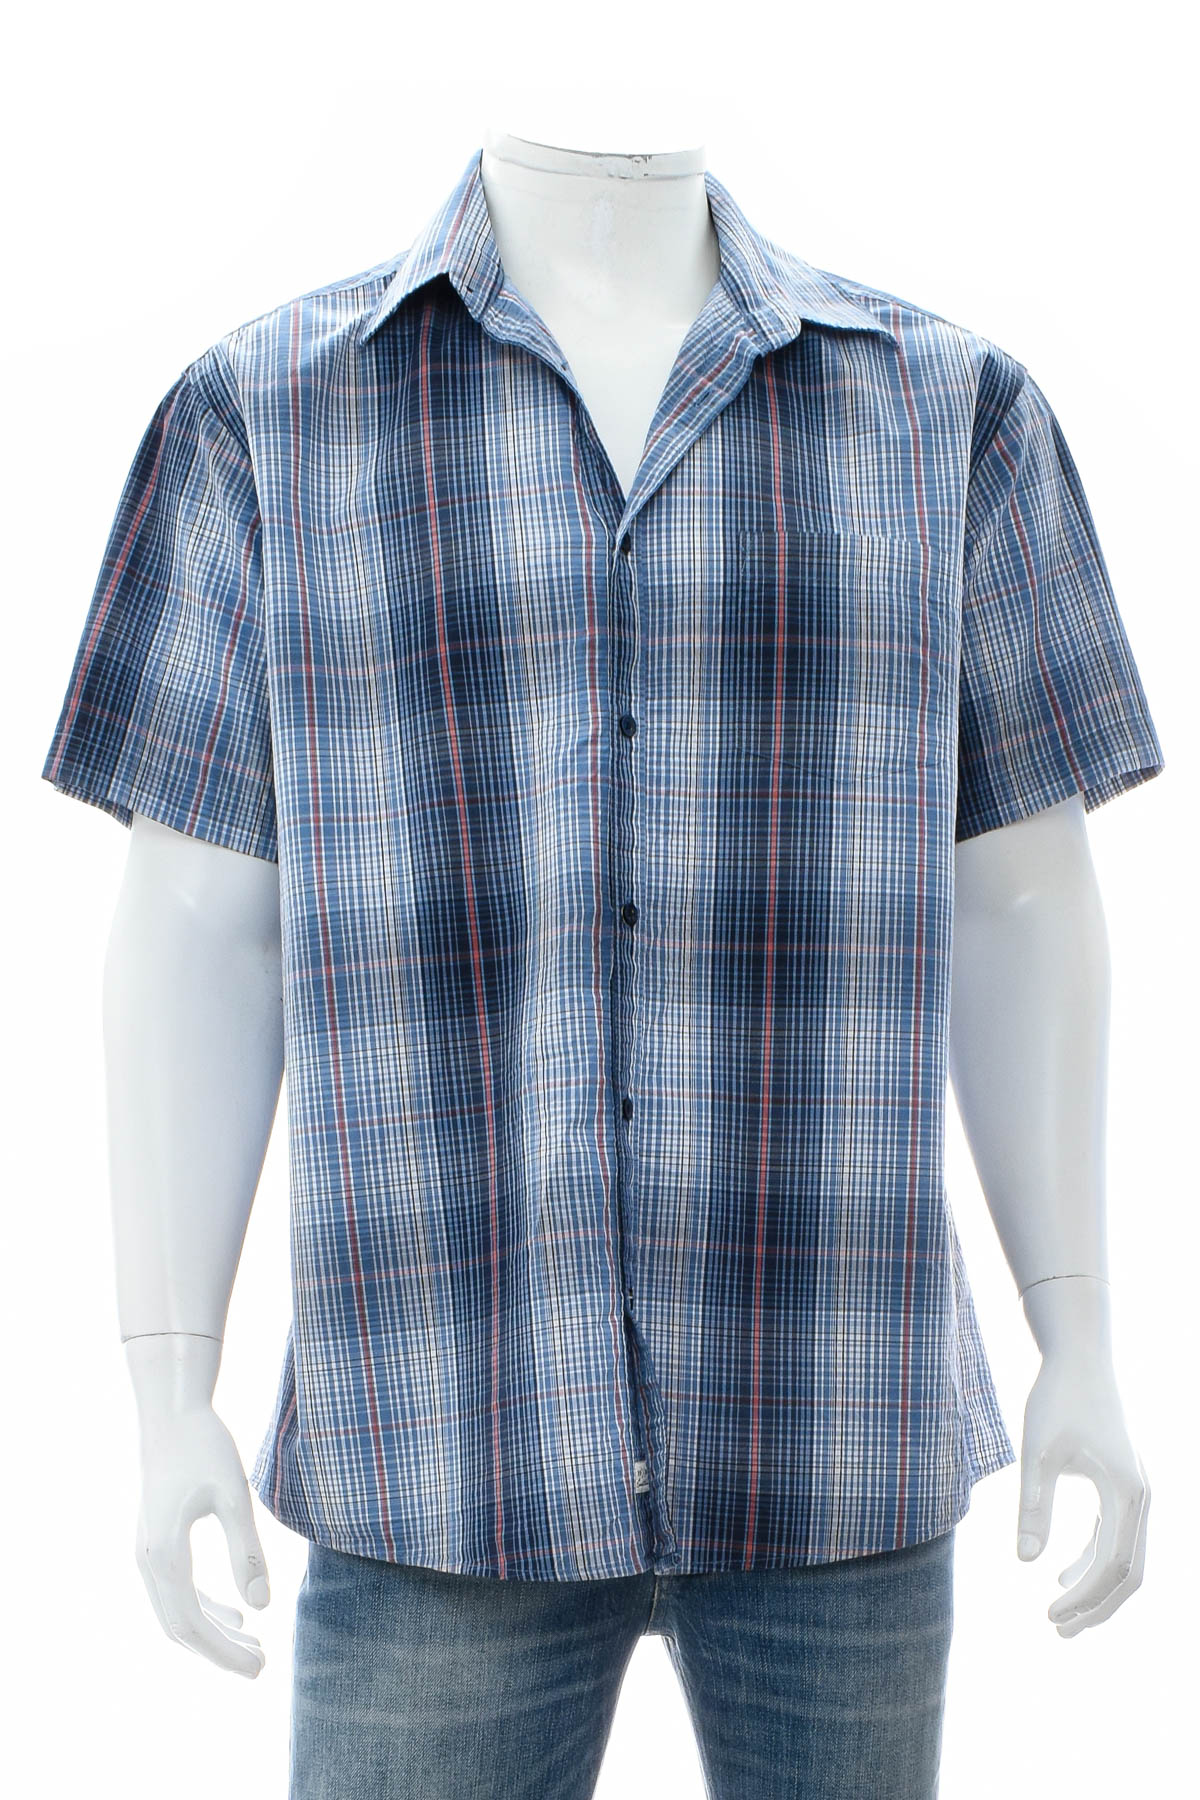 Ανδρικό πουκάμισο - Essentials by Tchibo - 0